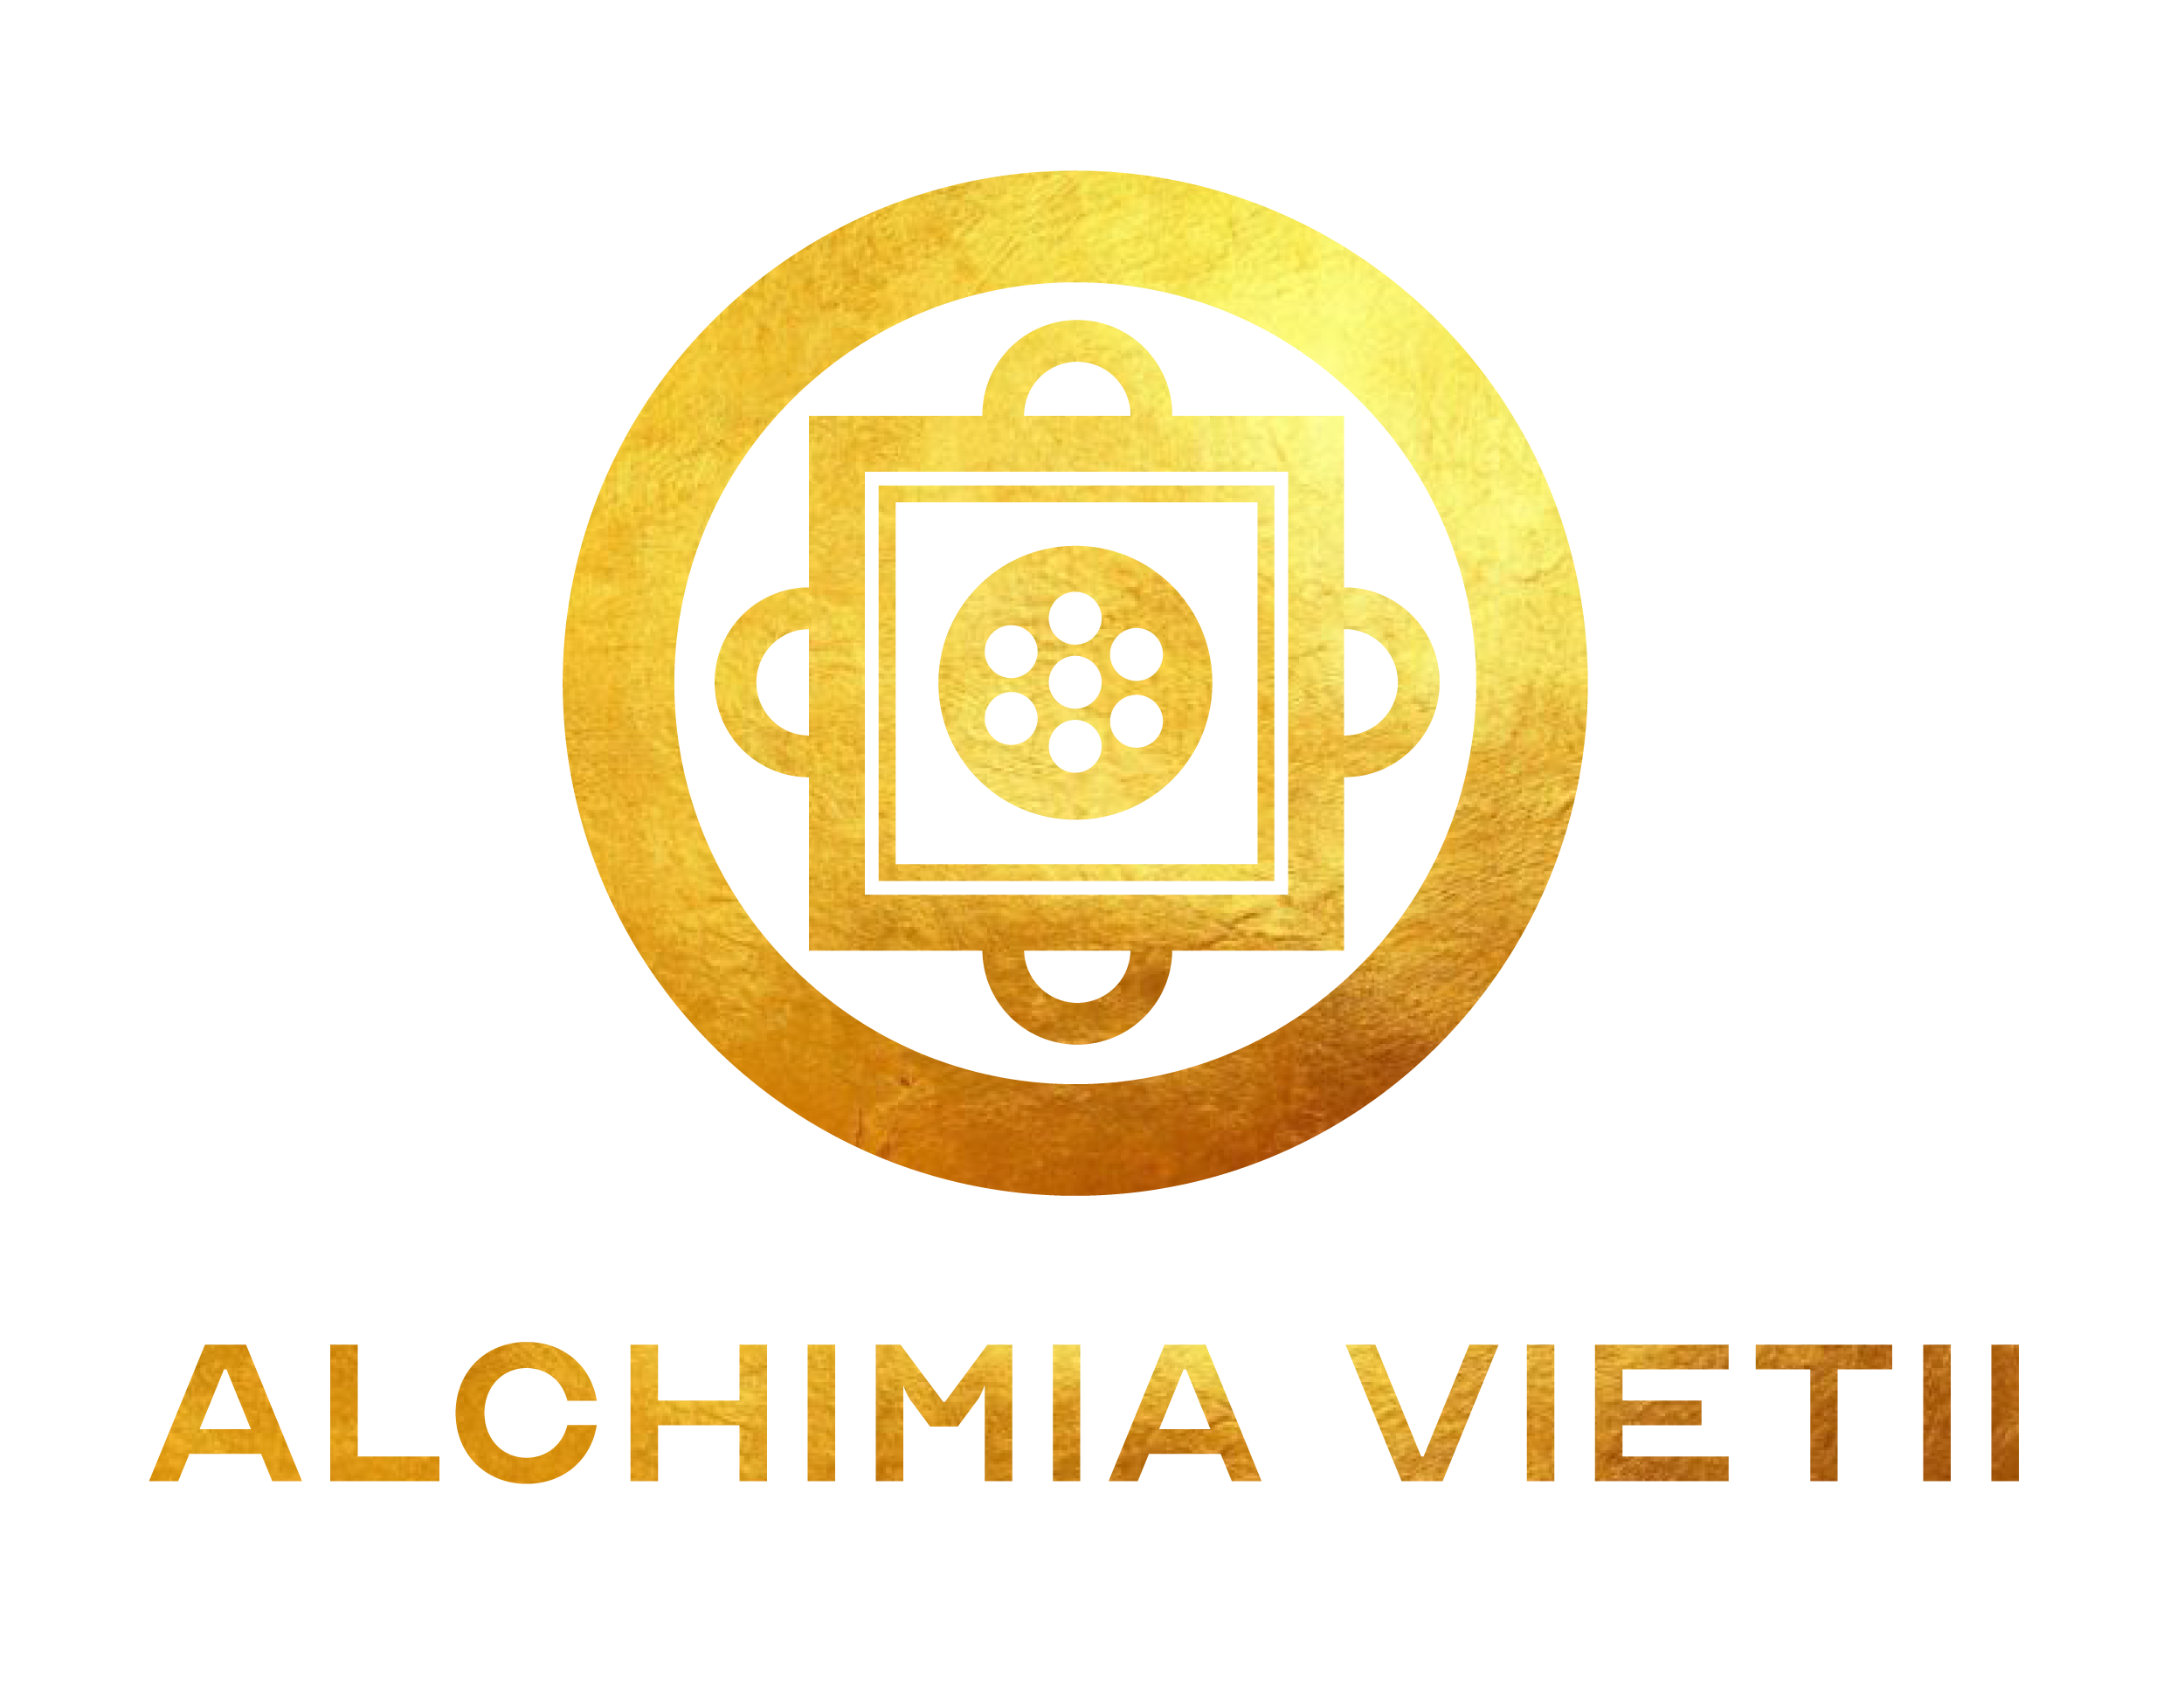 Alchimia Vietii  logo